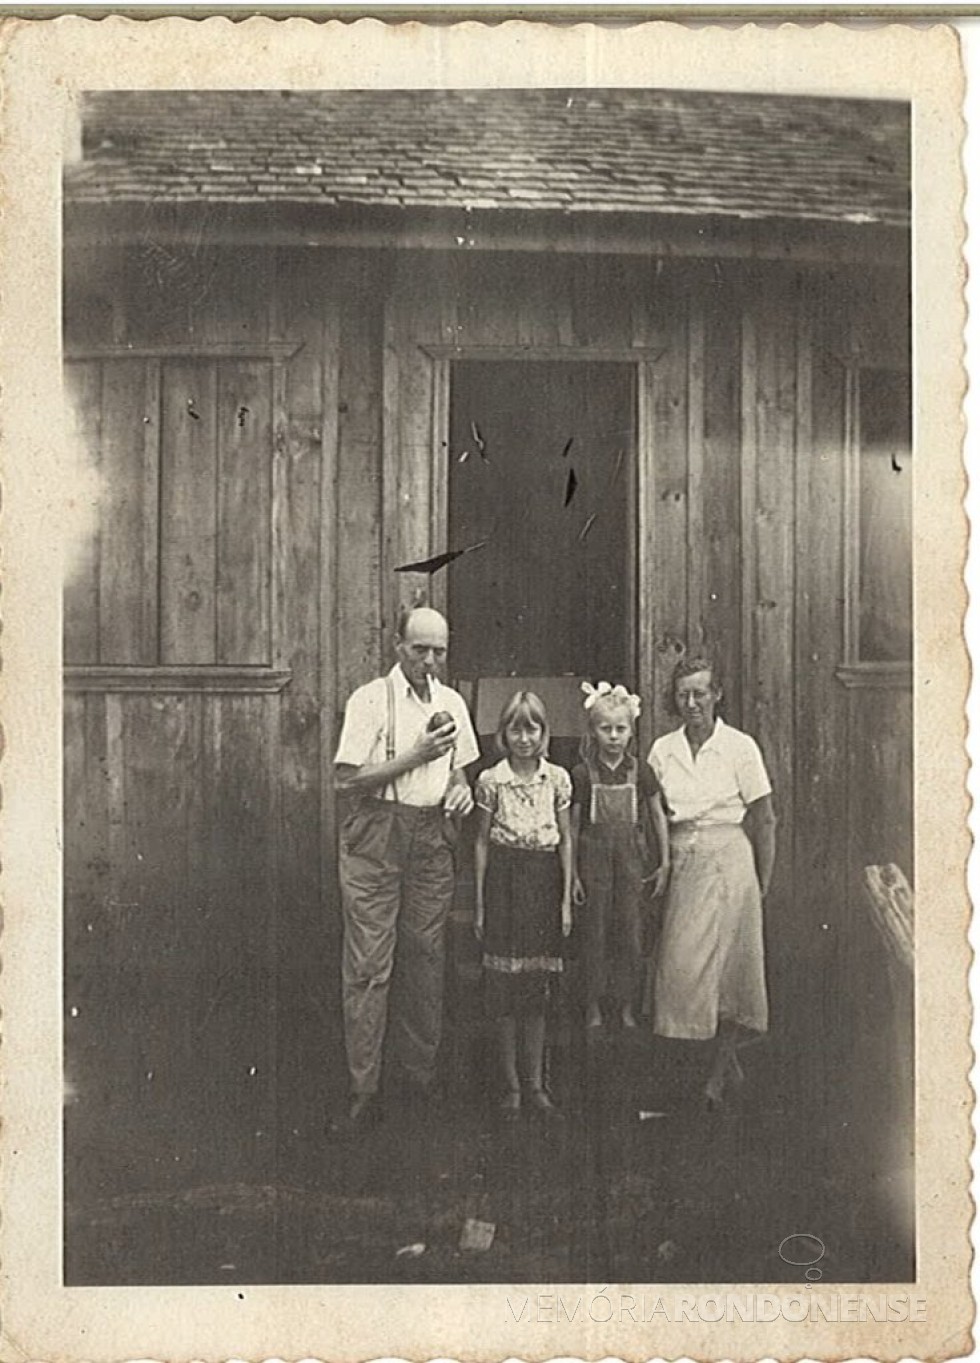 || Casal pioneiro Johann Paul  e Erica Poniewass com as filhas Ingrid e Gisela, logo após inauguração de sua casa na cidade de Toledo (PR), em 1953.
Imagem: Acervo Edith Inge Poiniewass (Curitiba) - FOTO  10 - 